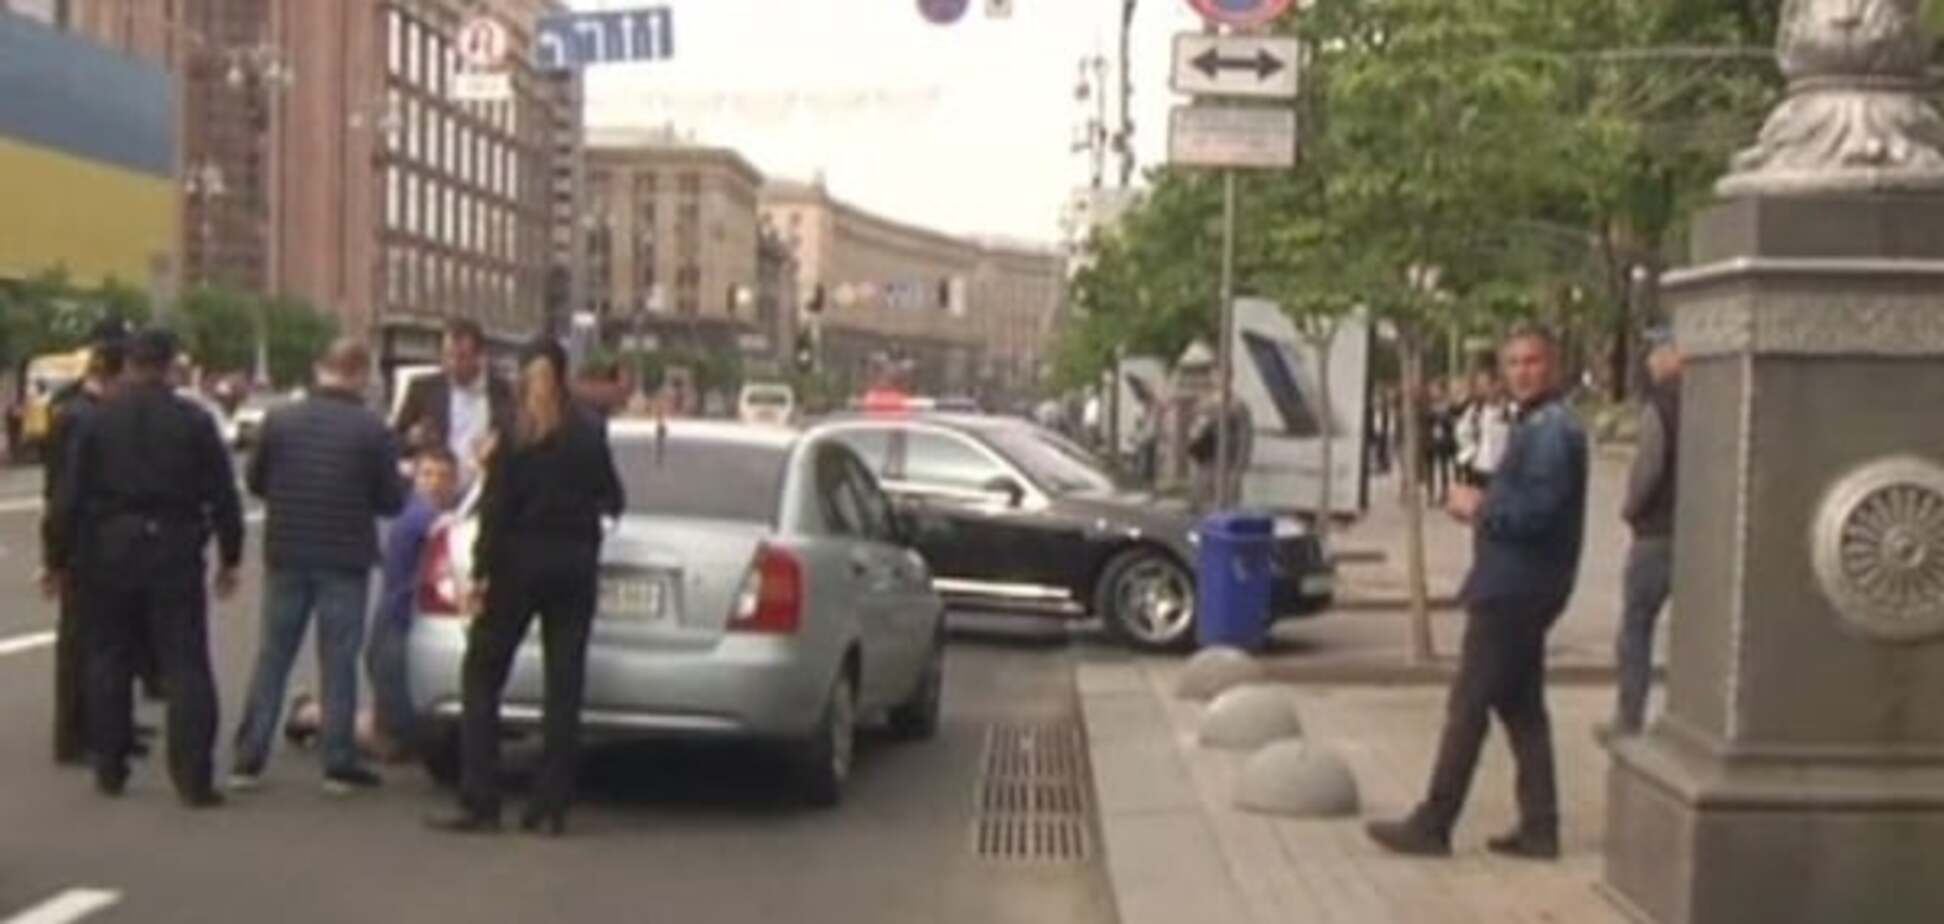 Копы задержали автомобиль с мужчиной, расстрелявшим человека в центре Киева. Фотофакт